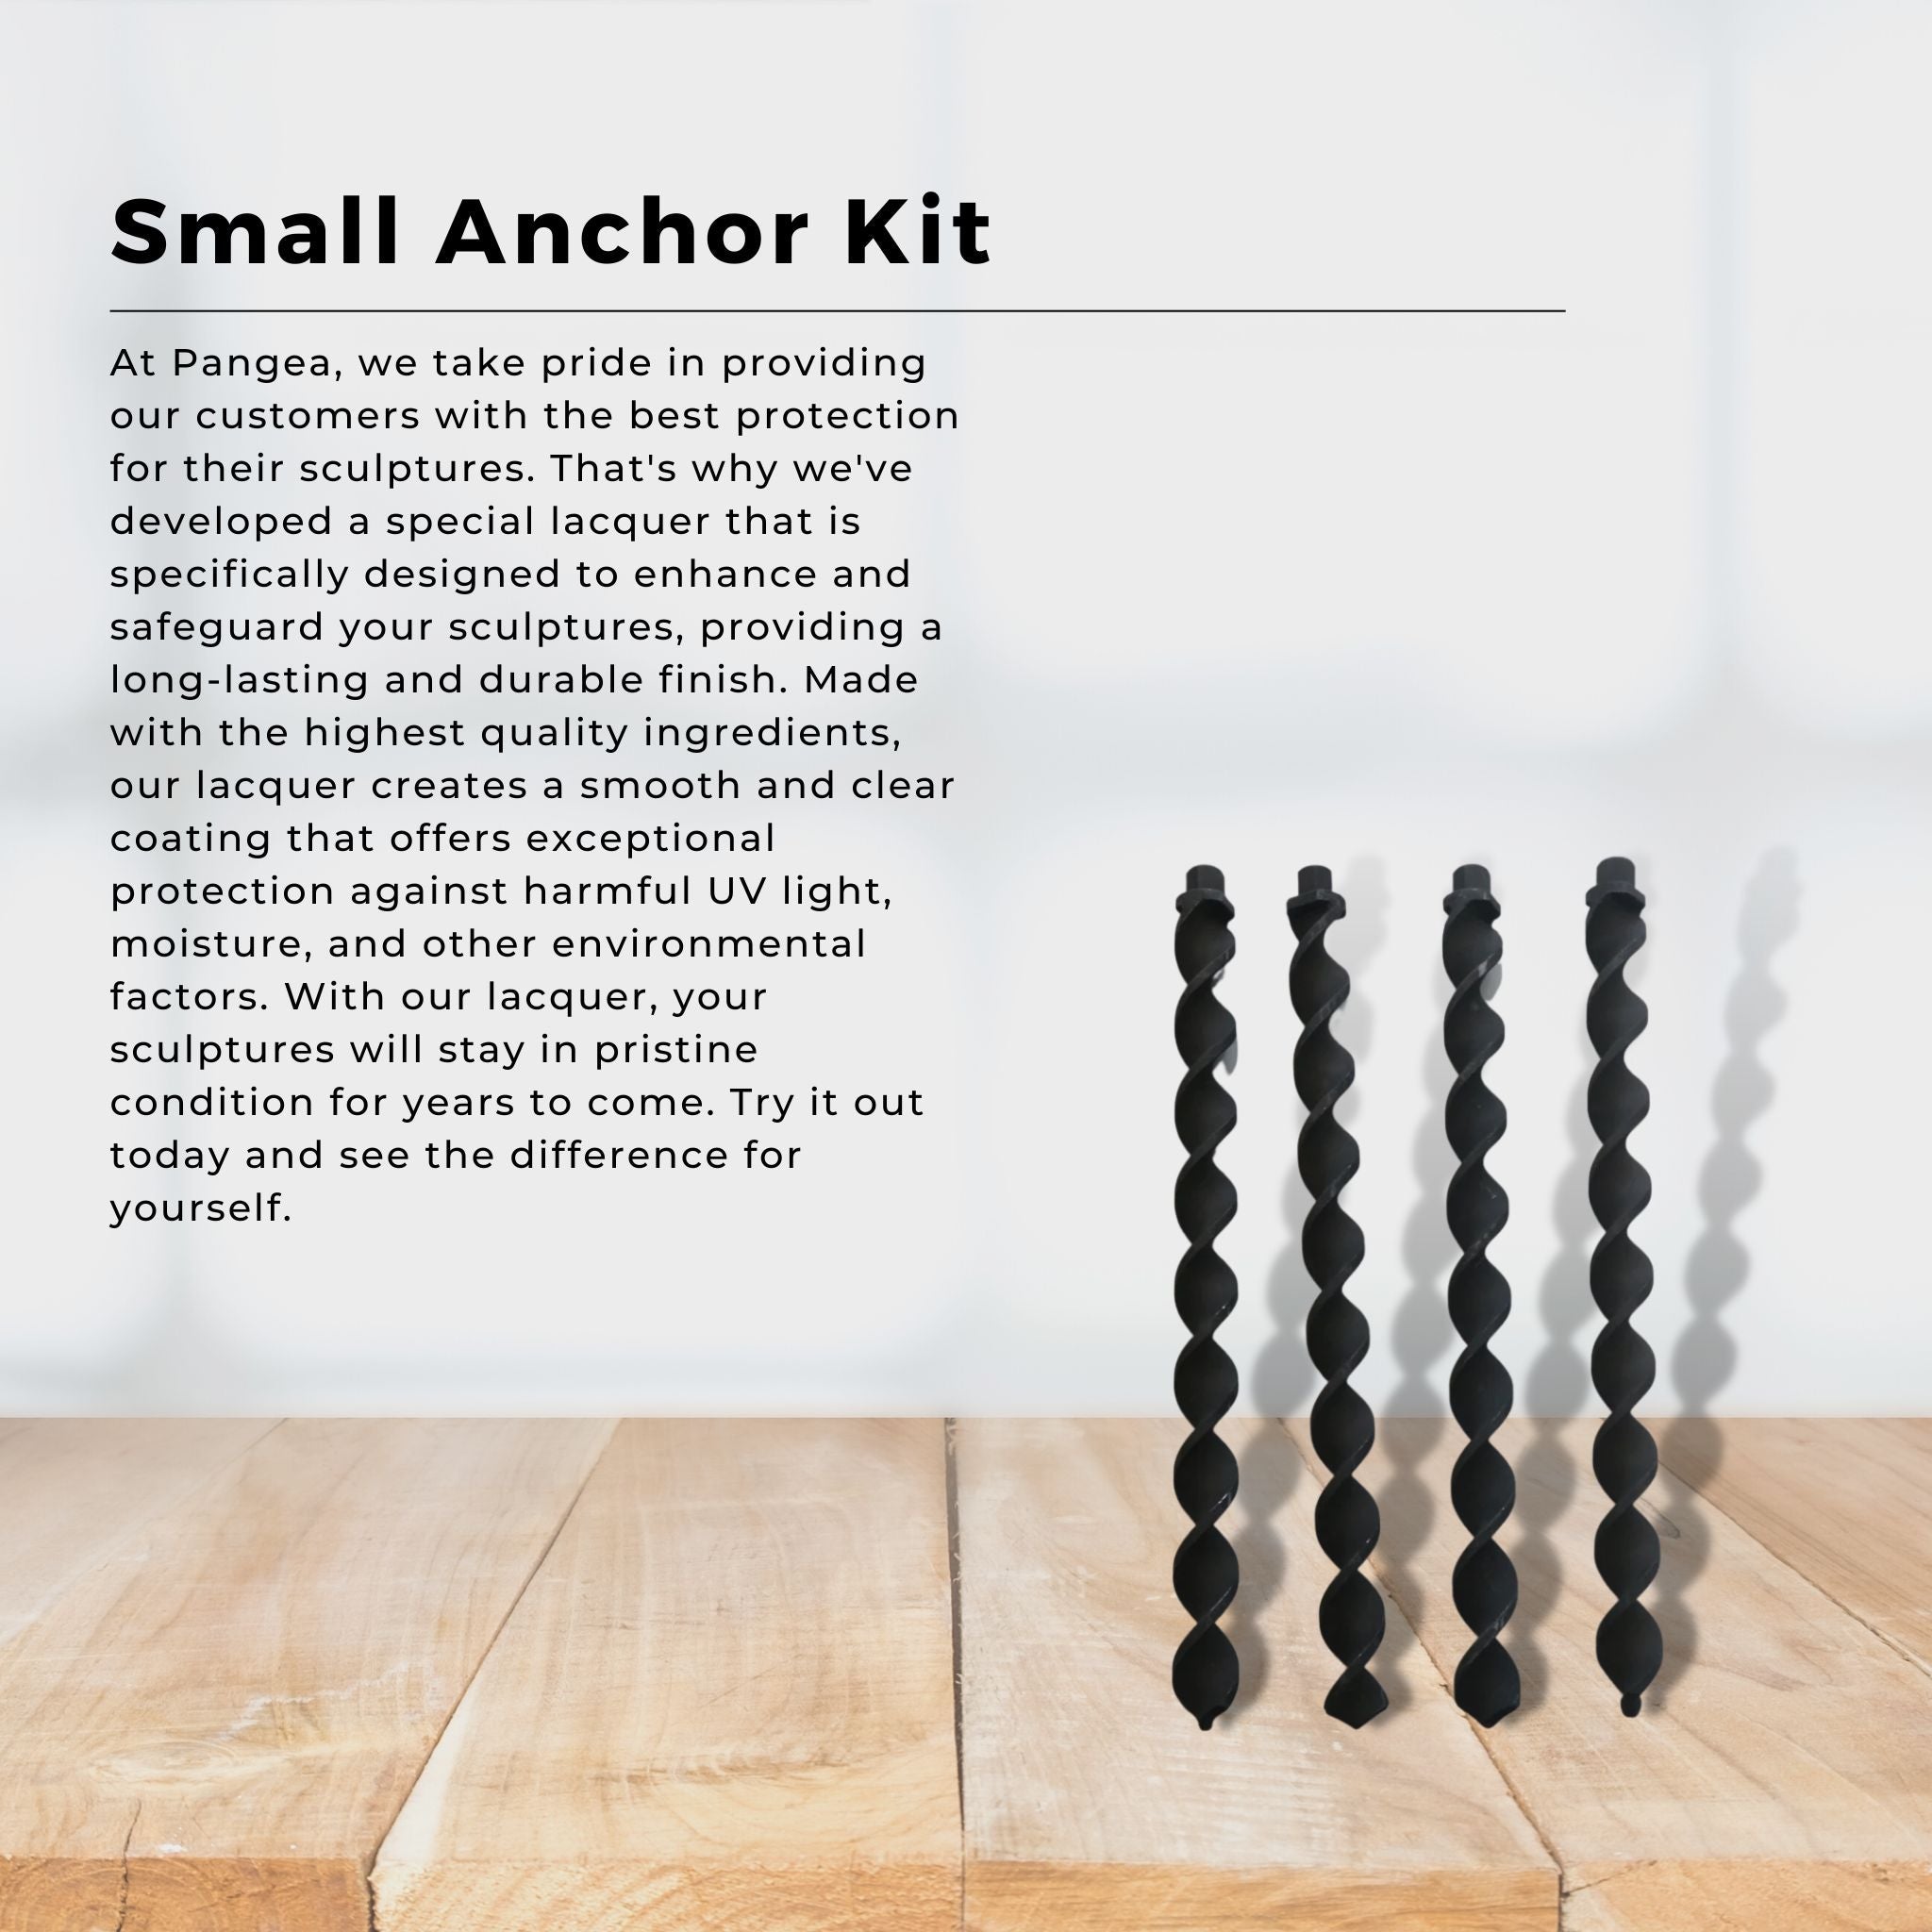 Small Anchor Kit - Pangea Sculptures